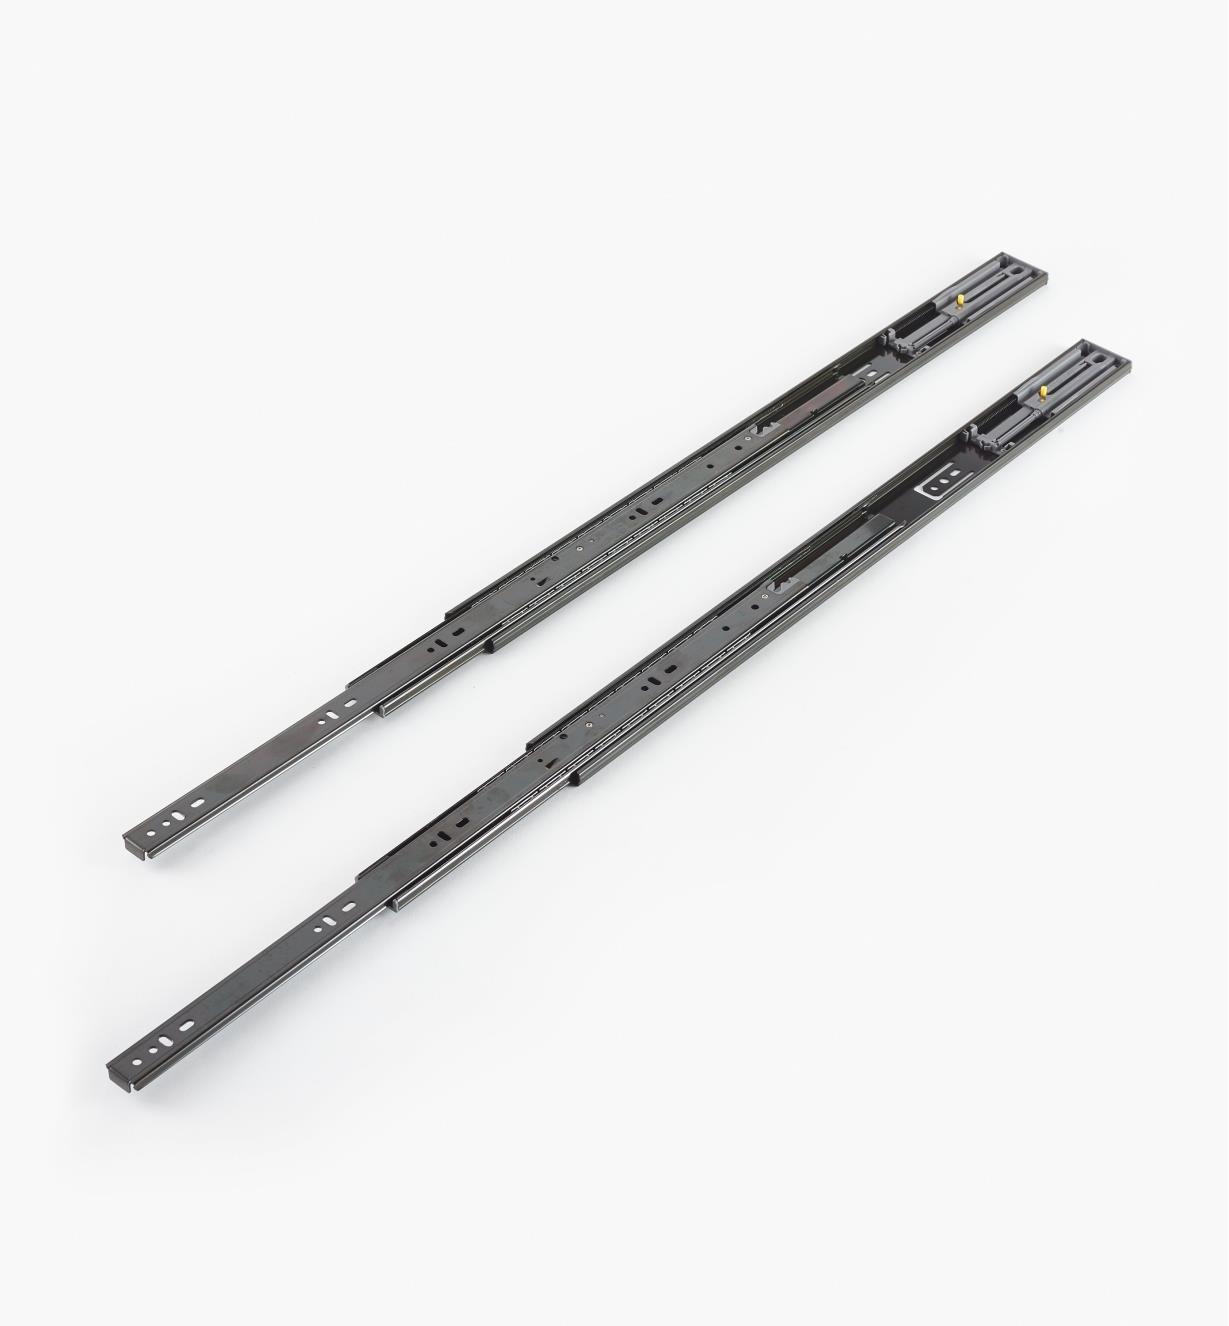 02K5260 - Black Finish, 600mm (24"), Soft-Closing Full-Extension Slides, pr. (100 lb)